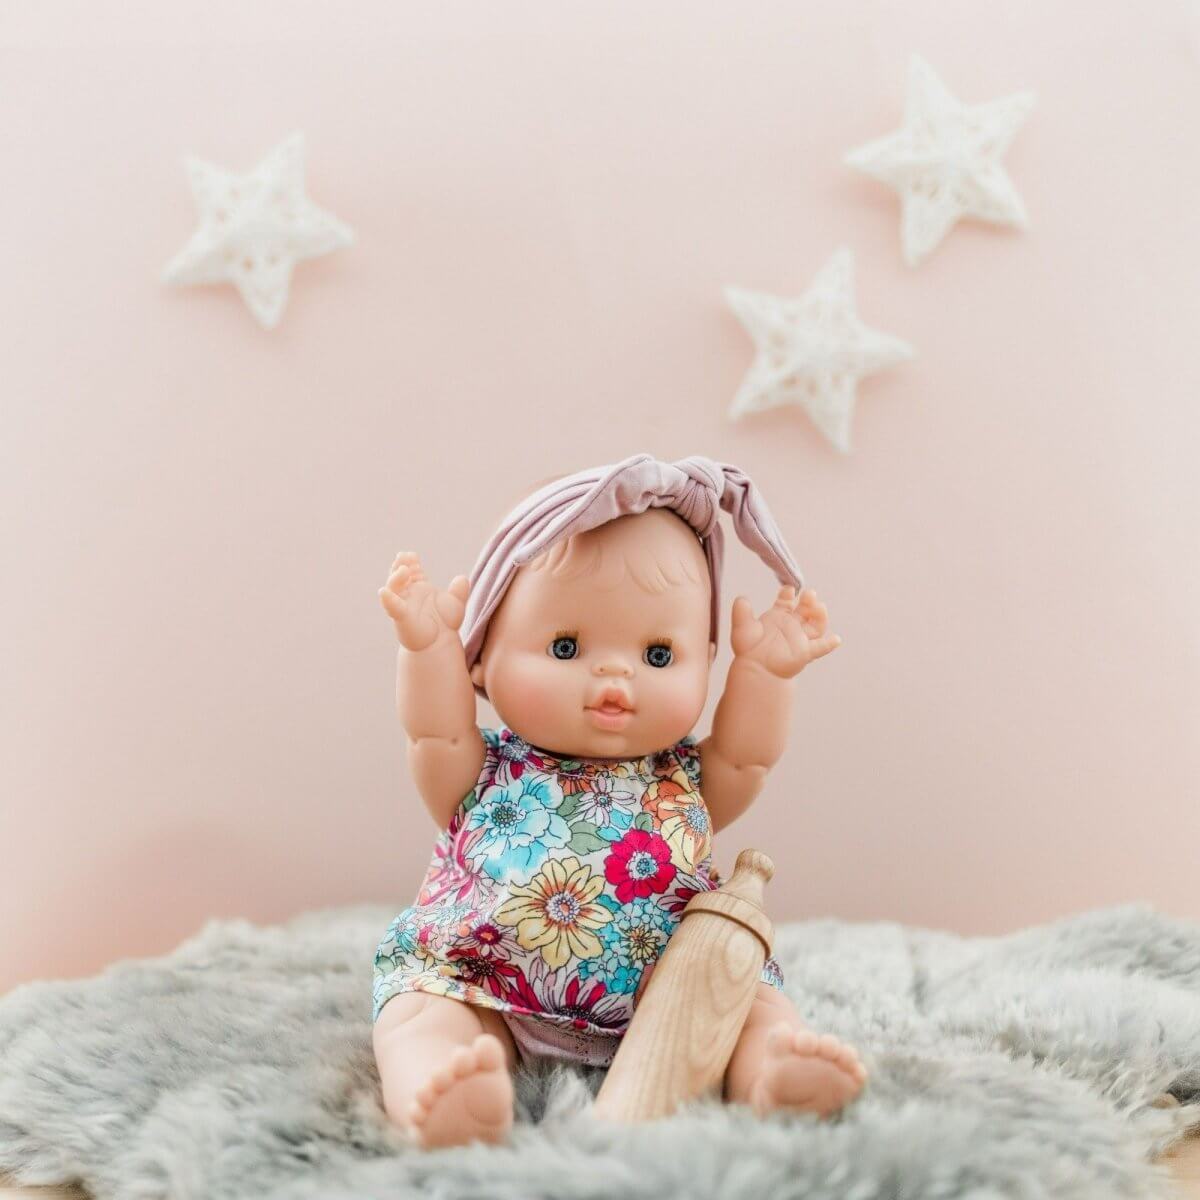 Poupée bébé Gordis en pyjama - Rose – Boutique LeoLudo